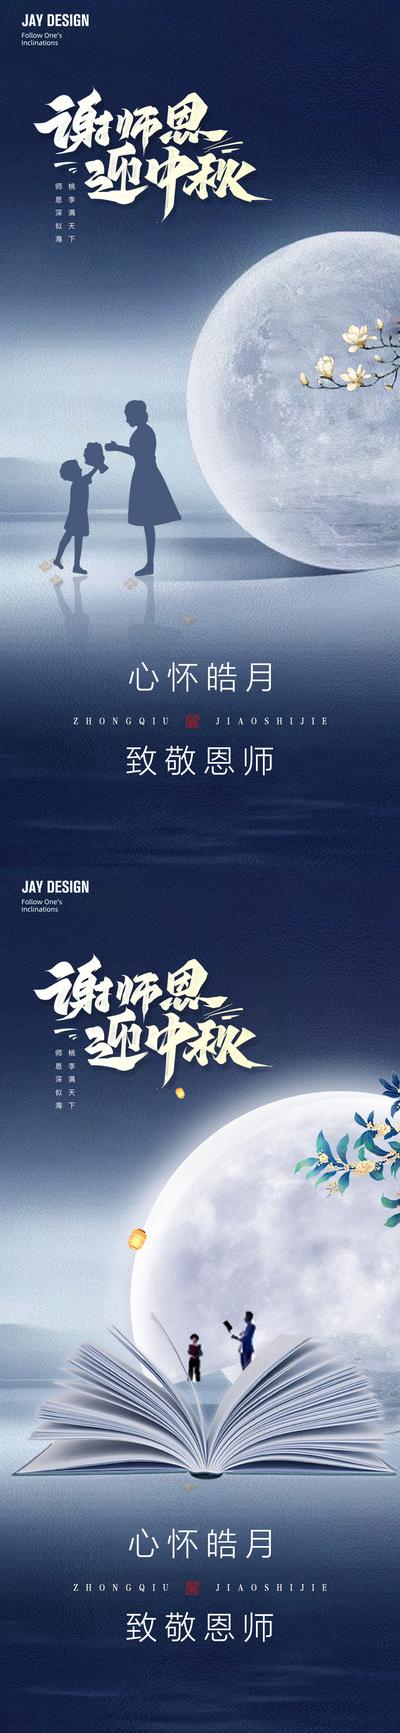 南门网 广告 海报 地产 医美 节日 中式 高端 中国风 质感